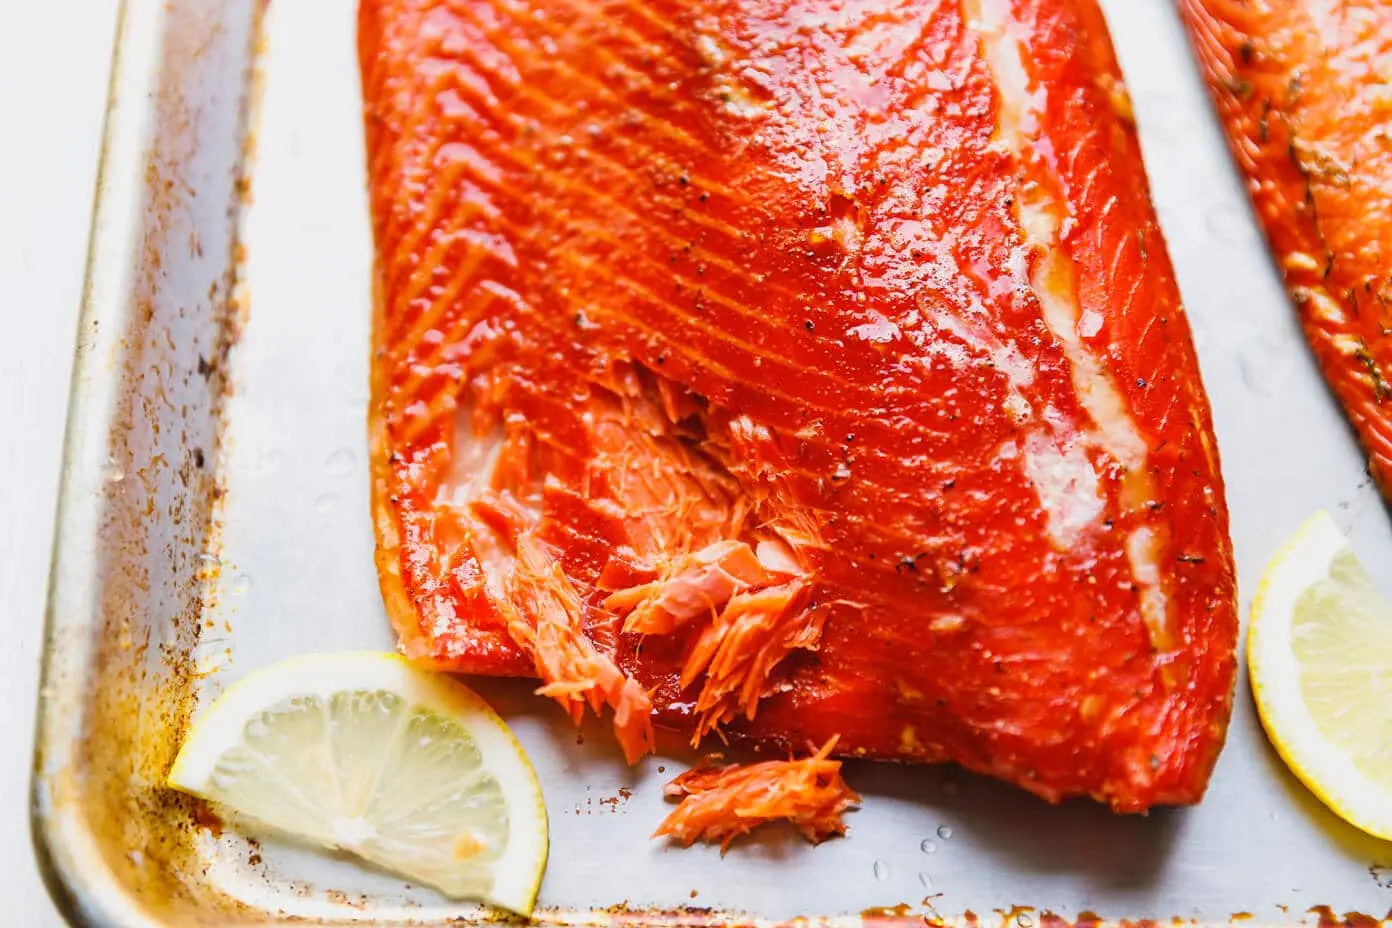 smoked atlantic salmon recipe - Is Atlantic salmon good smoked